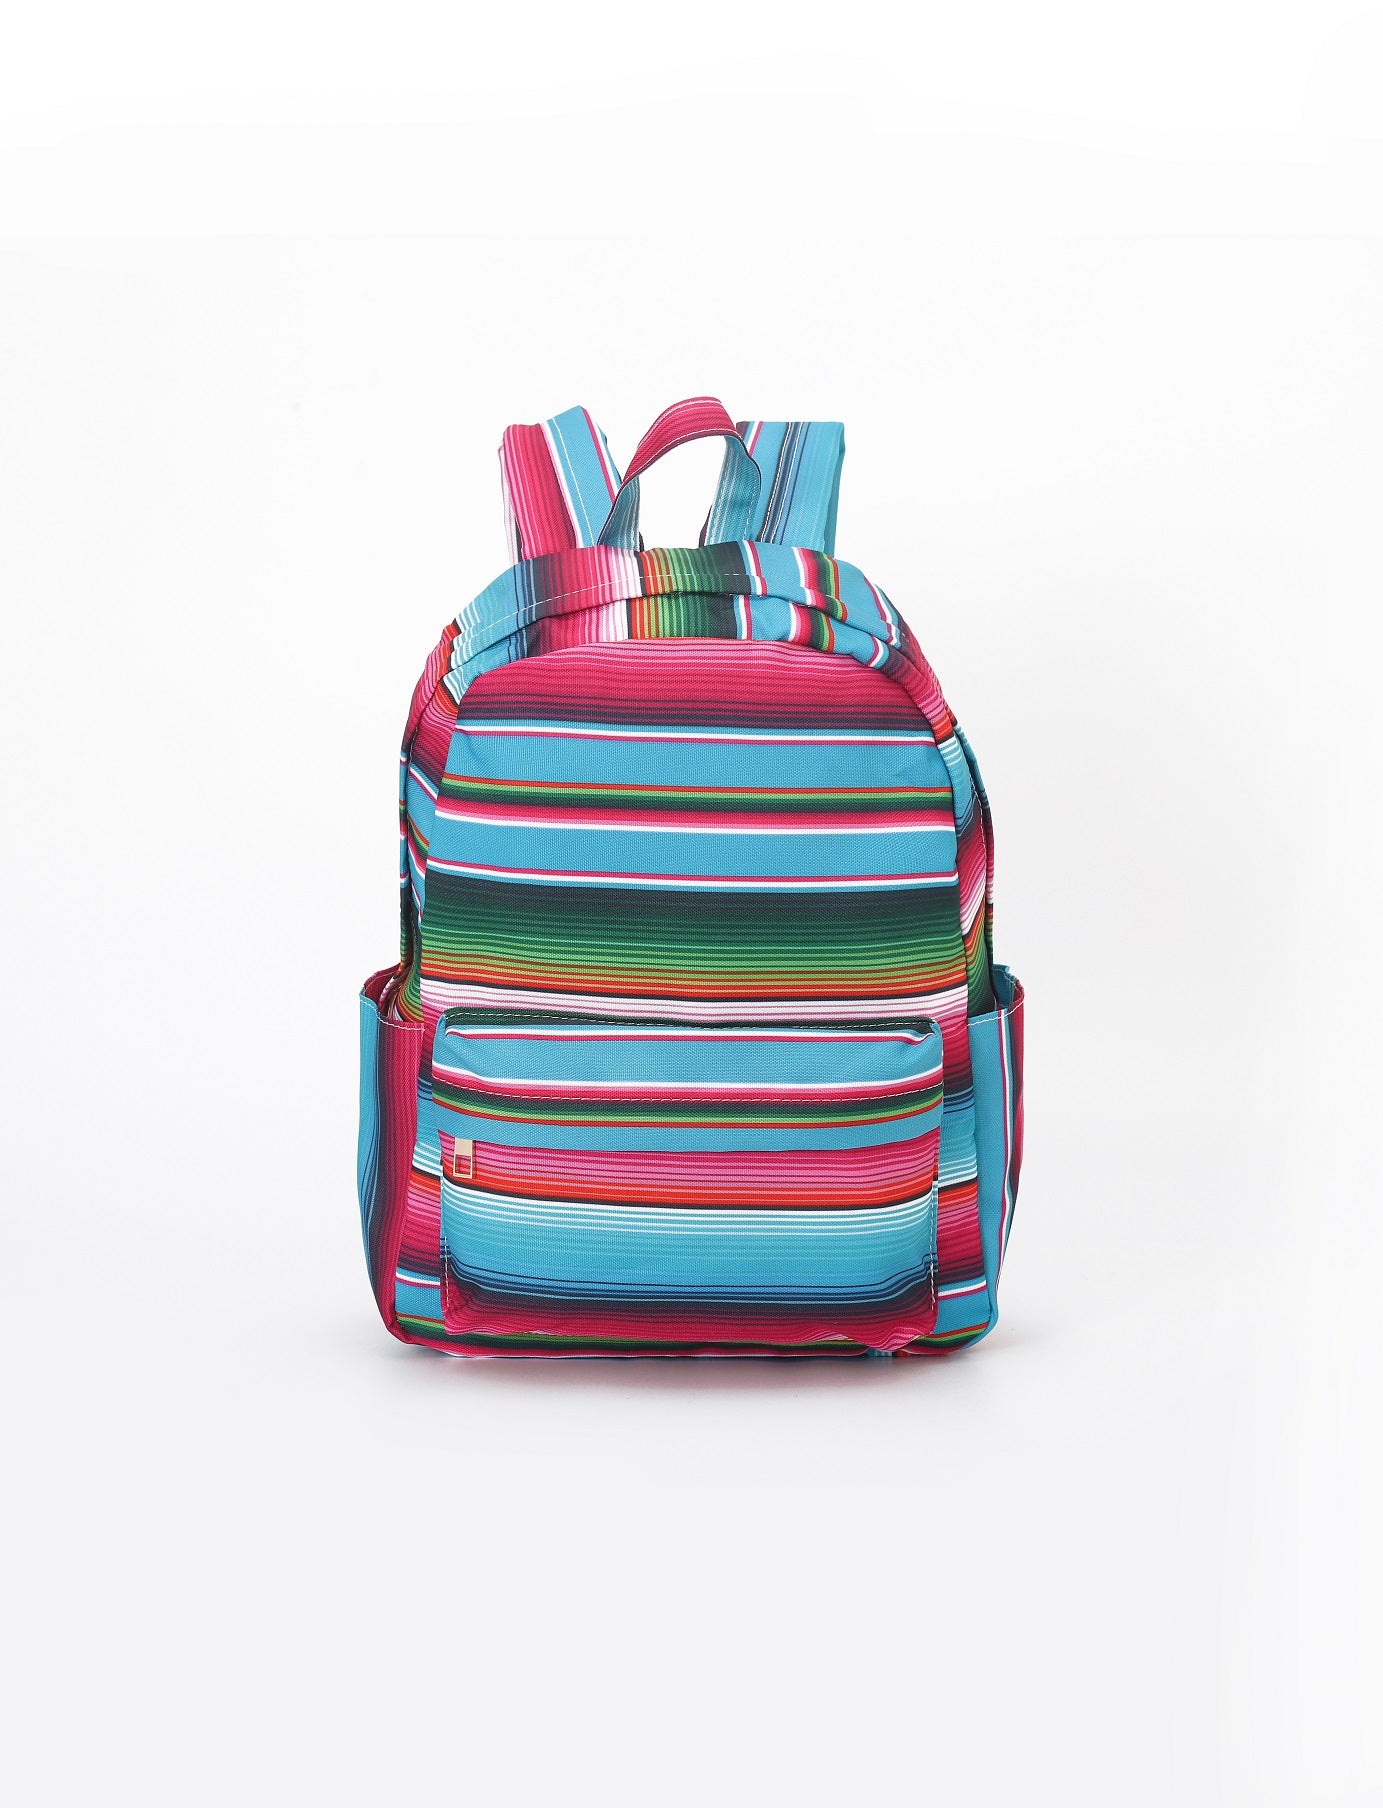 Colored Stripes Kids Adjustable Shoulder Backpack